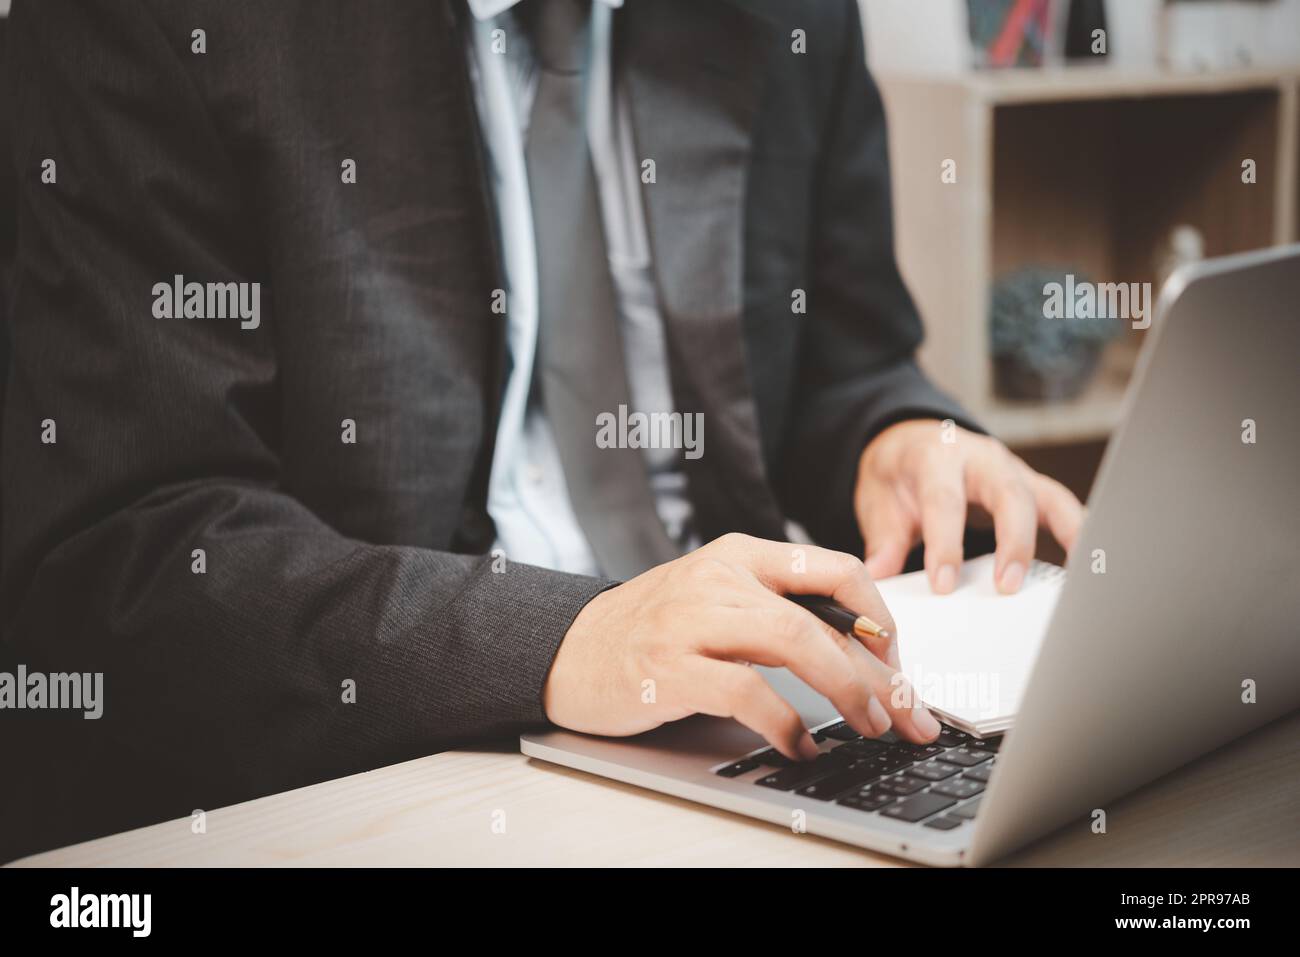 Homme personne utilisant un clavier ordinateur portable tenant un stylo et un livre sur le bureau. Banque D'Images